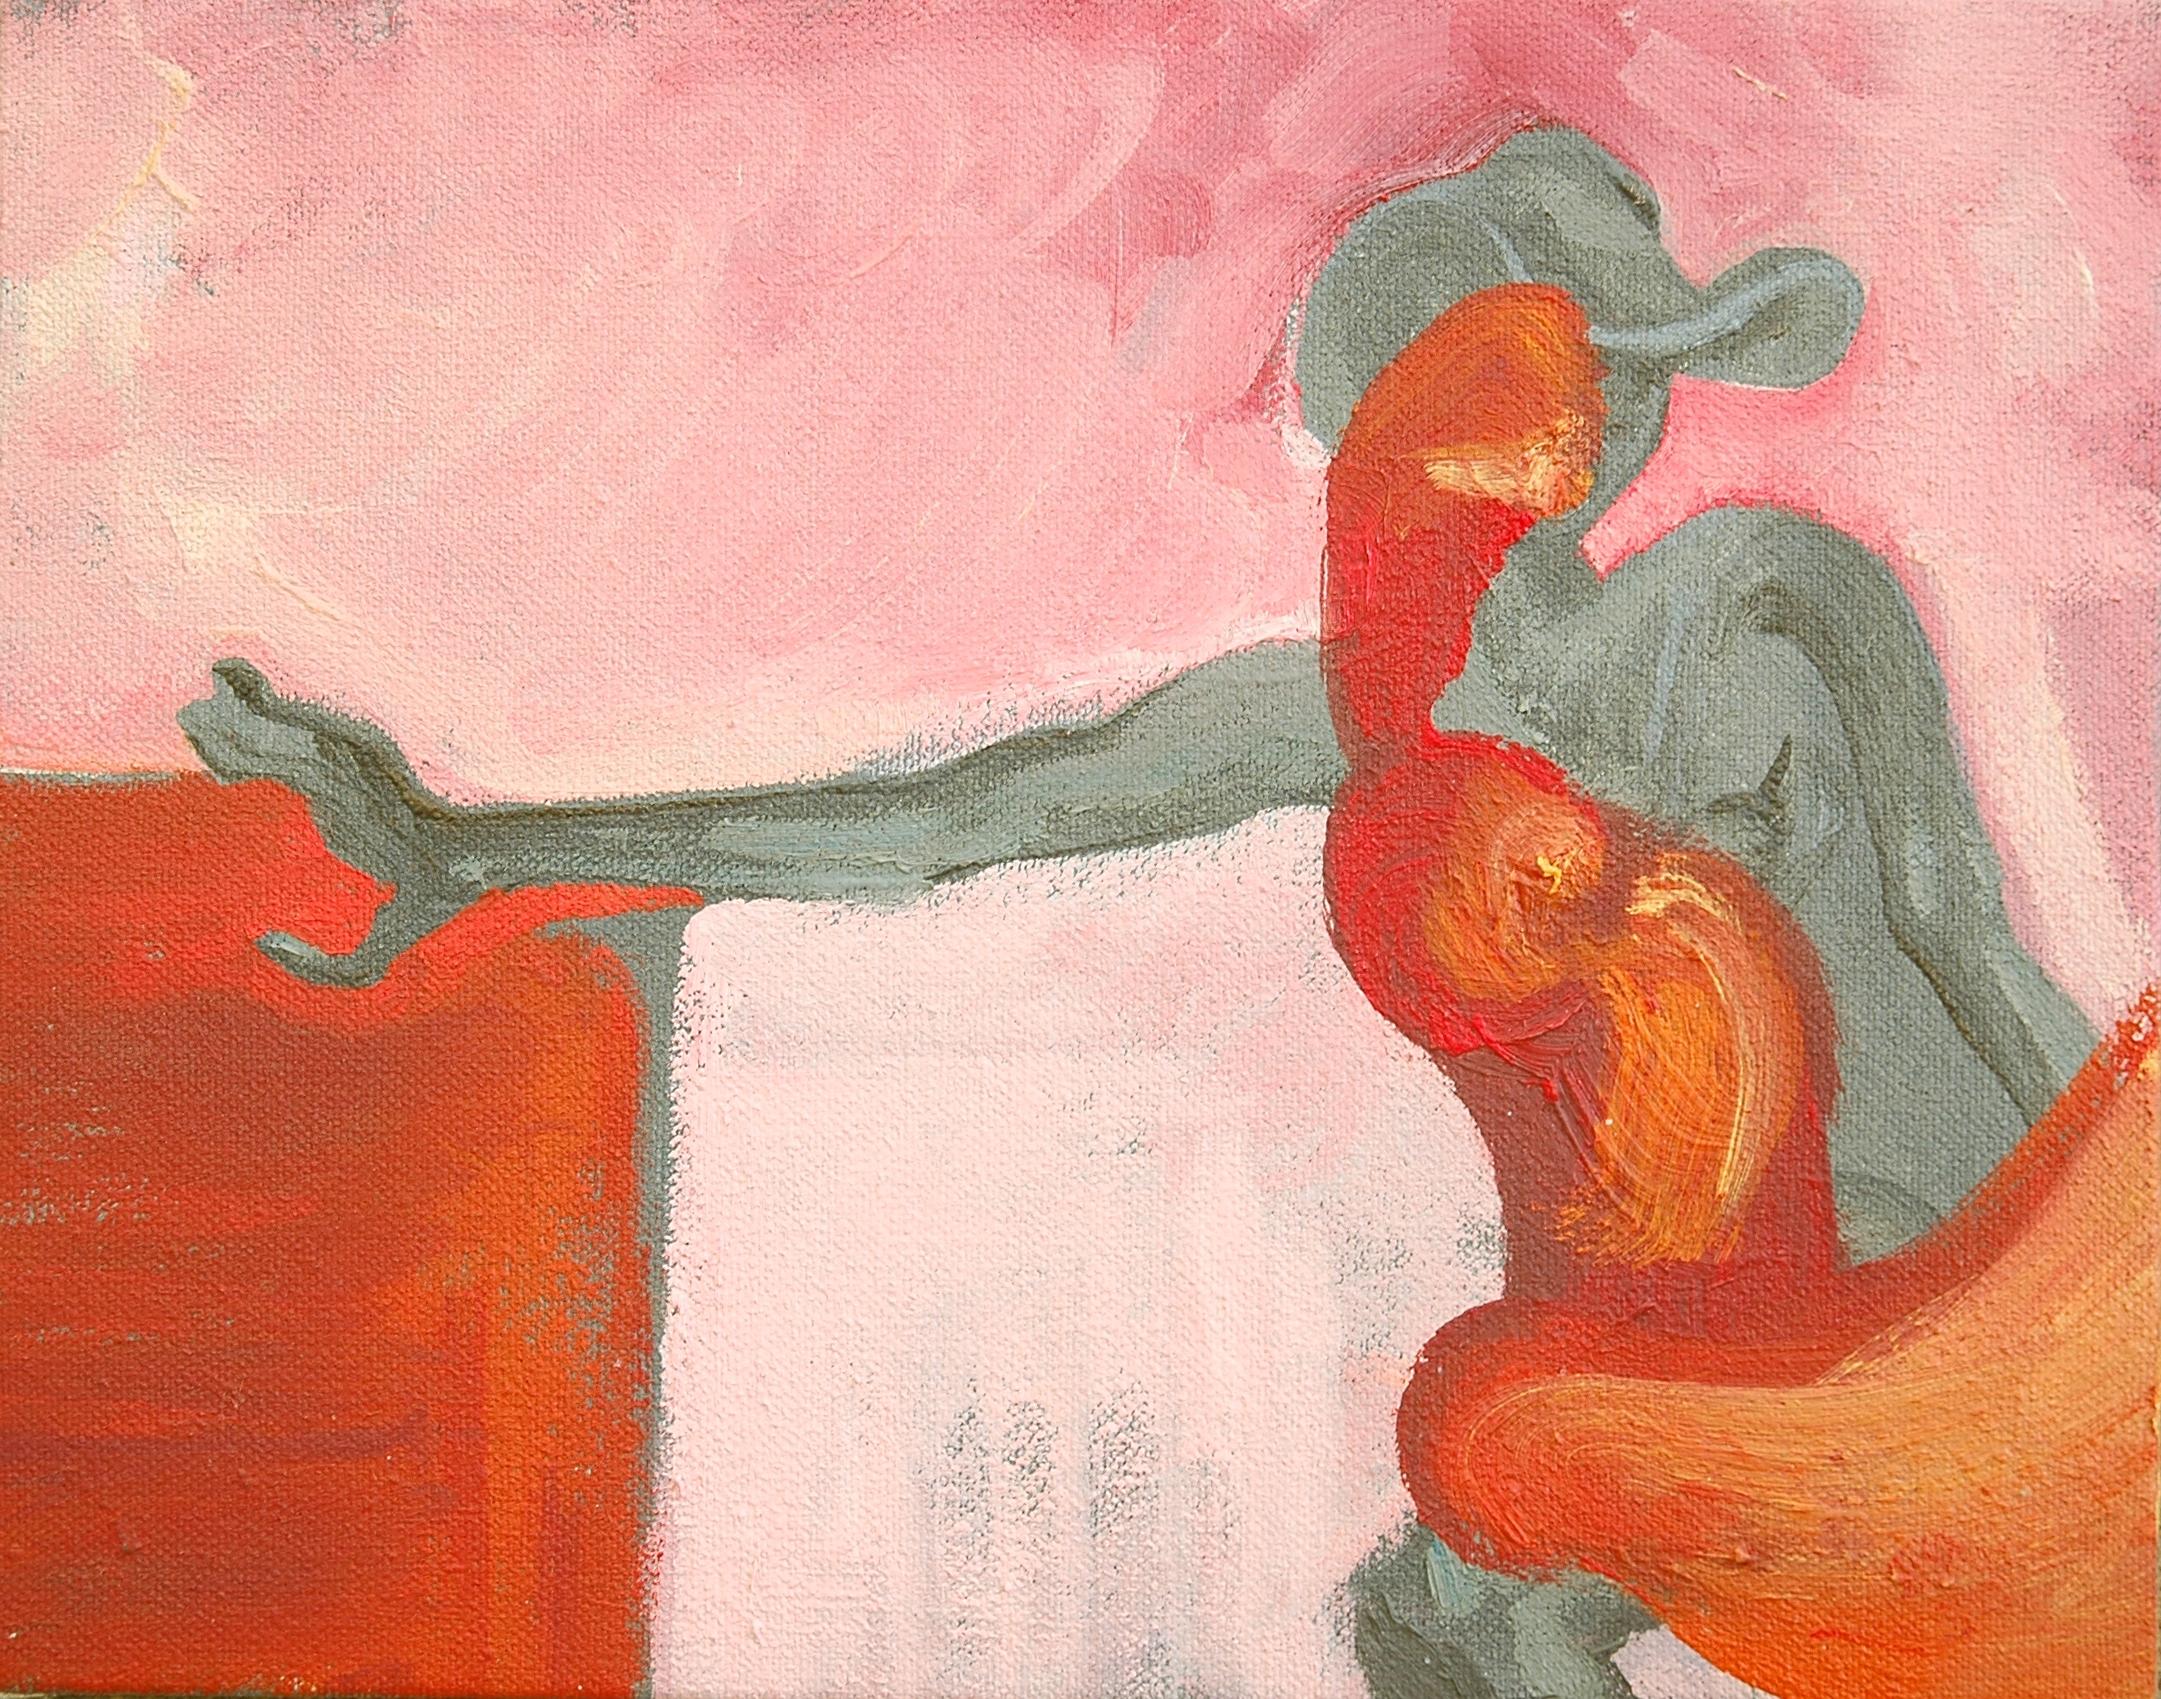 Shades of Me (Abat-jour de moi), peinture, huile sur toile - Painting de Amy Bernays